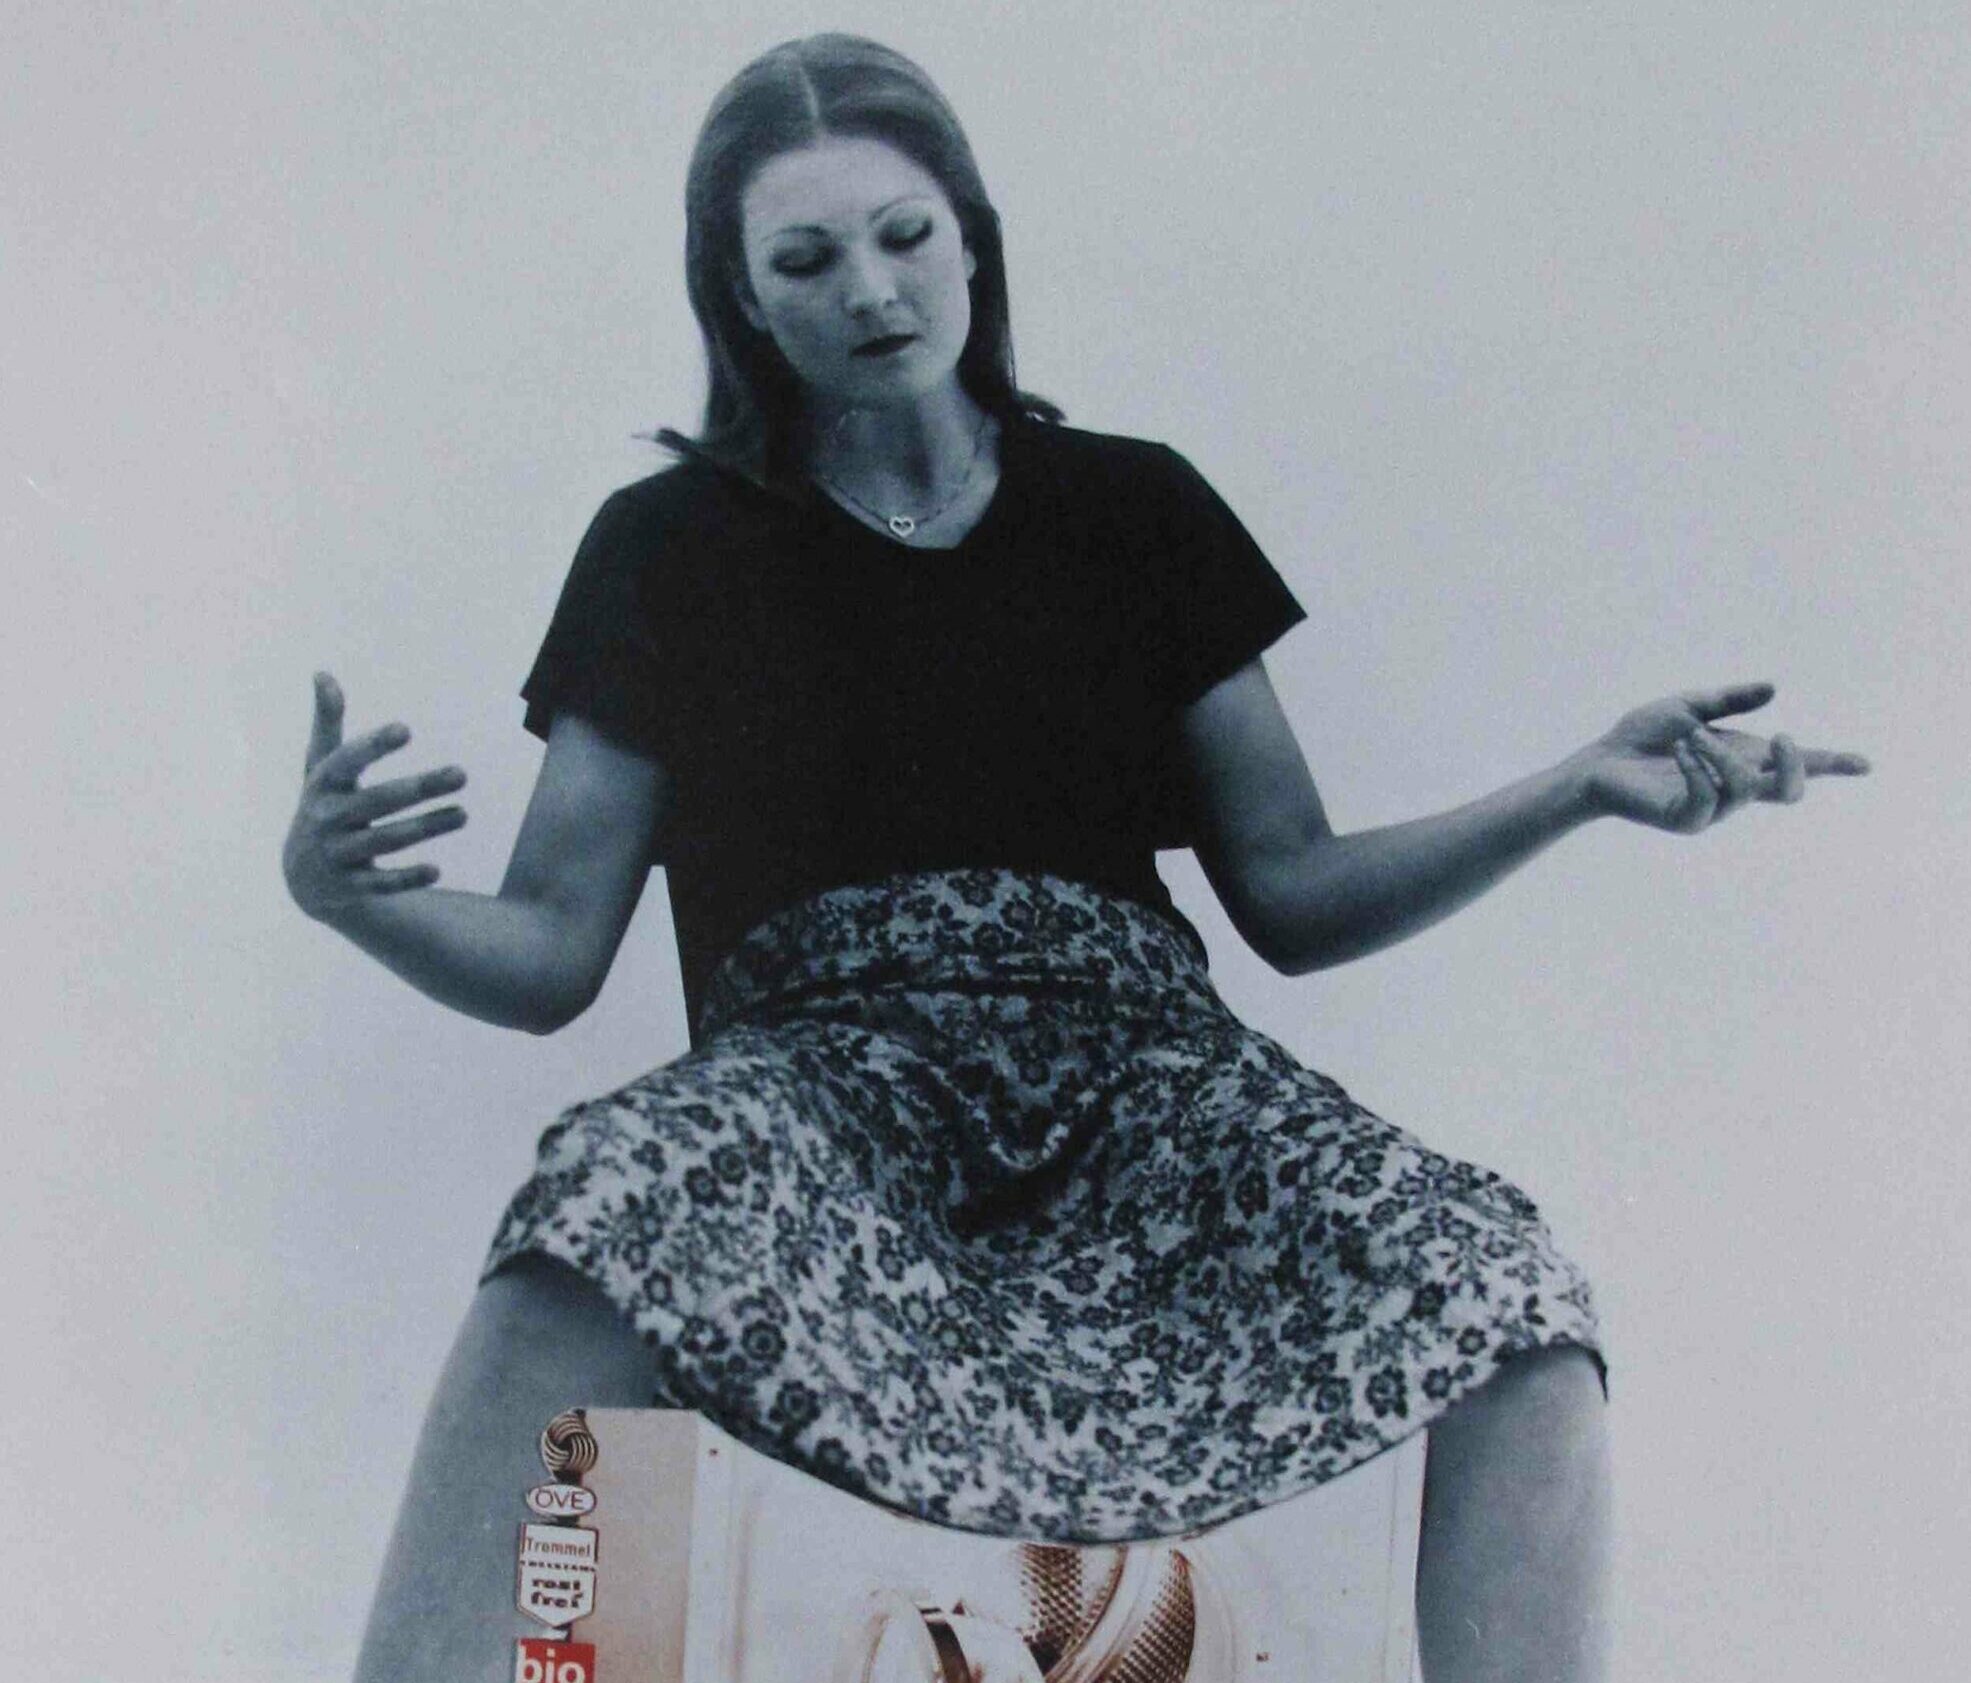 Niederkunft der Madonna im kruden Alltag einer Hausfrau: VALIE EXPORT interpretiert Michelangelos „Pietà“ 1974 schonungslos zeitgemäß © VALIE EXPORT